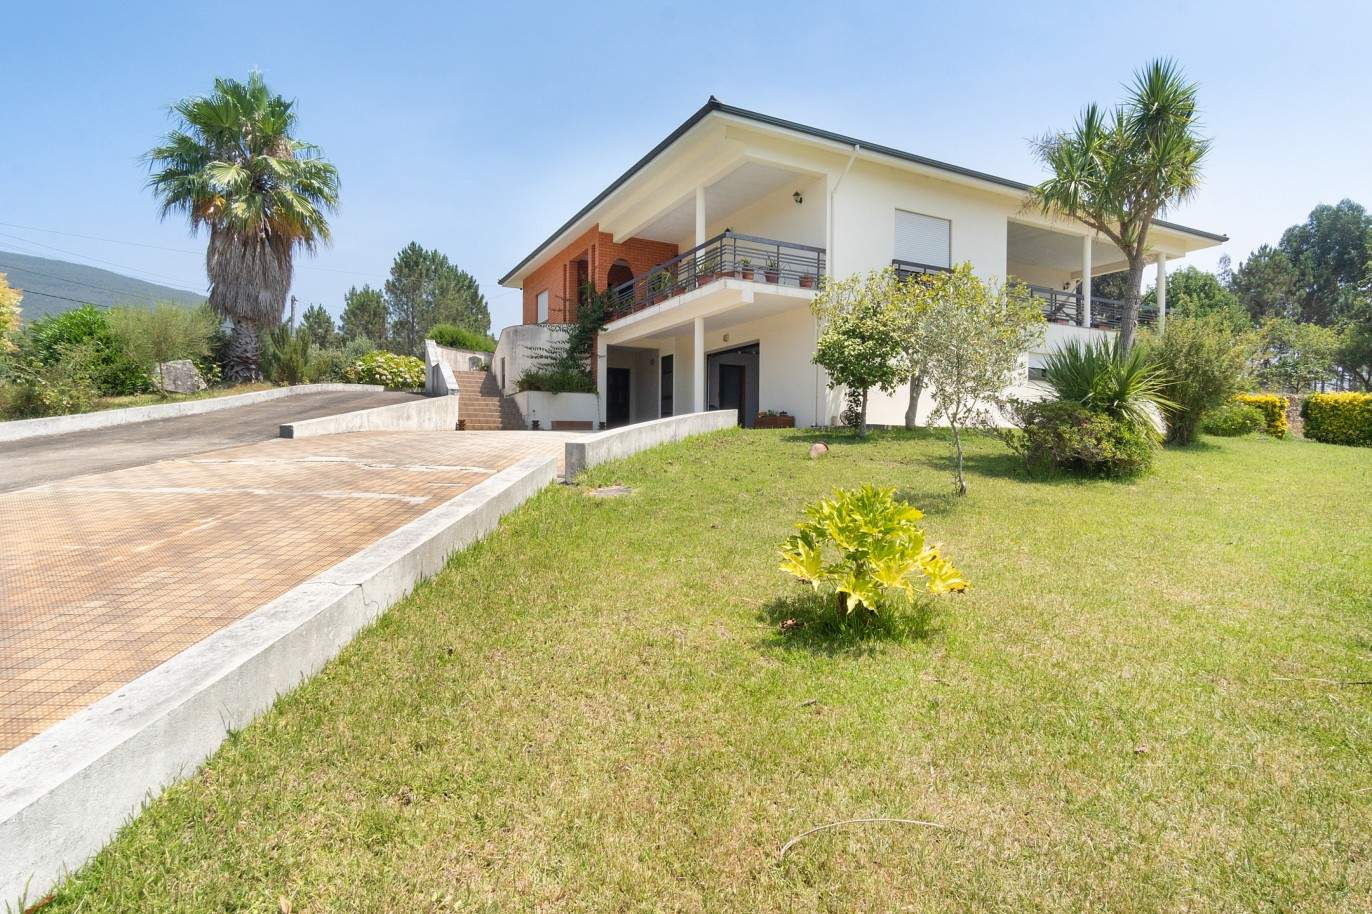 Villa mit Garten und Flussblick, zu verkaufen, in Melres, Gondomar, Porto, Portugal_204409